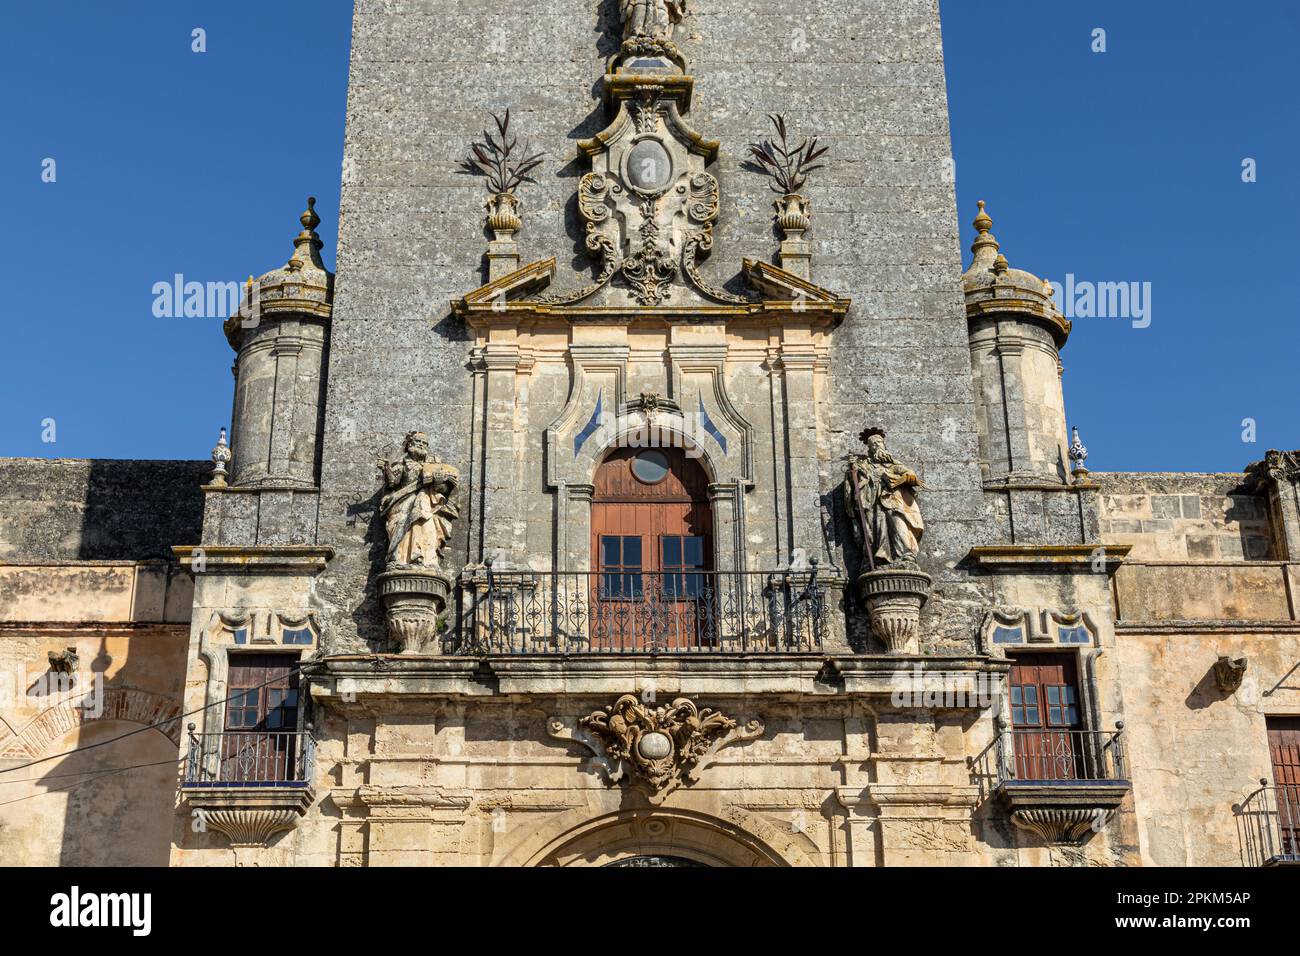 Arcos de la Frontera, Spagna. Facciata rinascimentale e torre dell'Iglesia de Nuestra Senora de la Asuncion (Chiesa di nostra Signora dell'Assunzione) Foto Stock